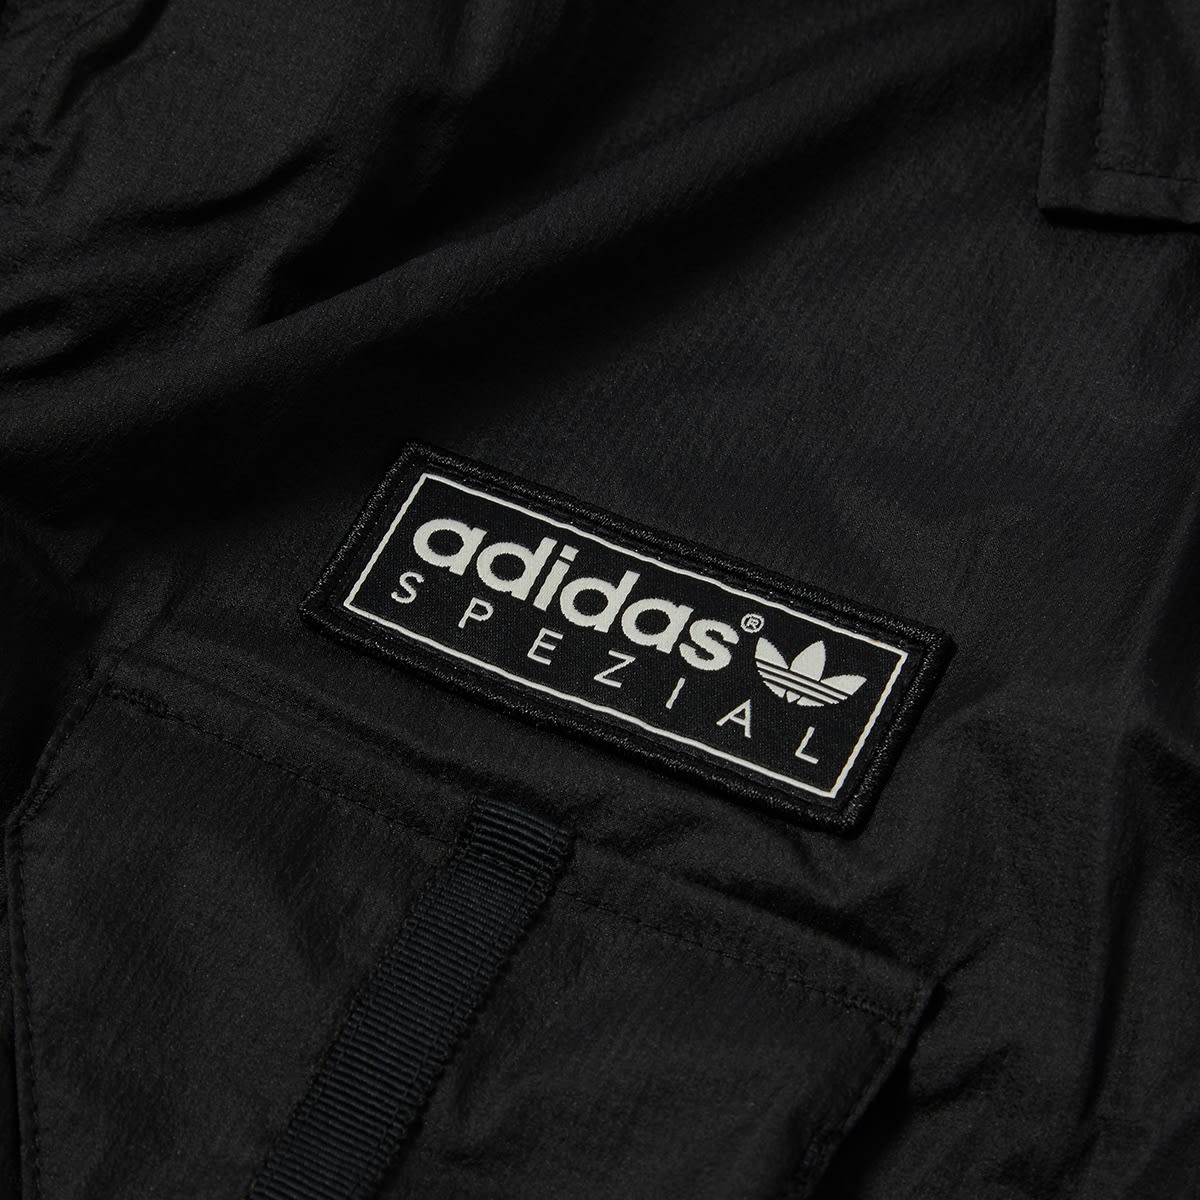 Adidas SPZL Haslingden (Black) | END. Launches